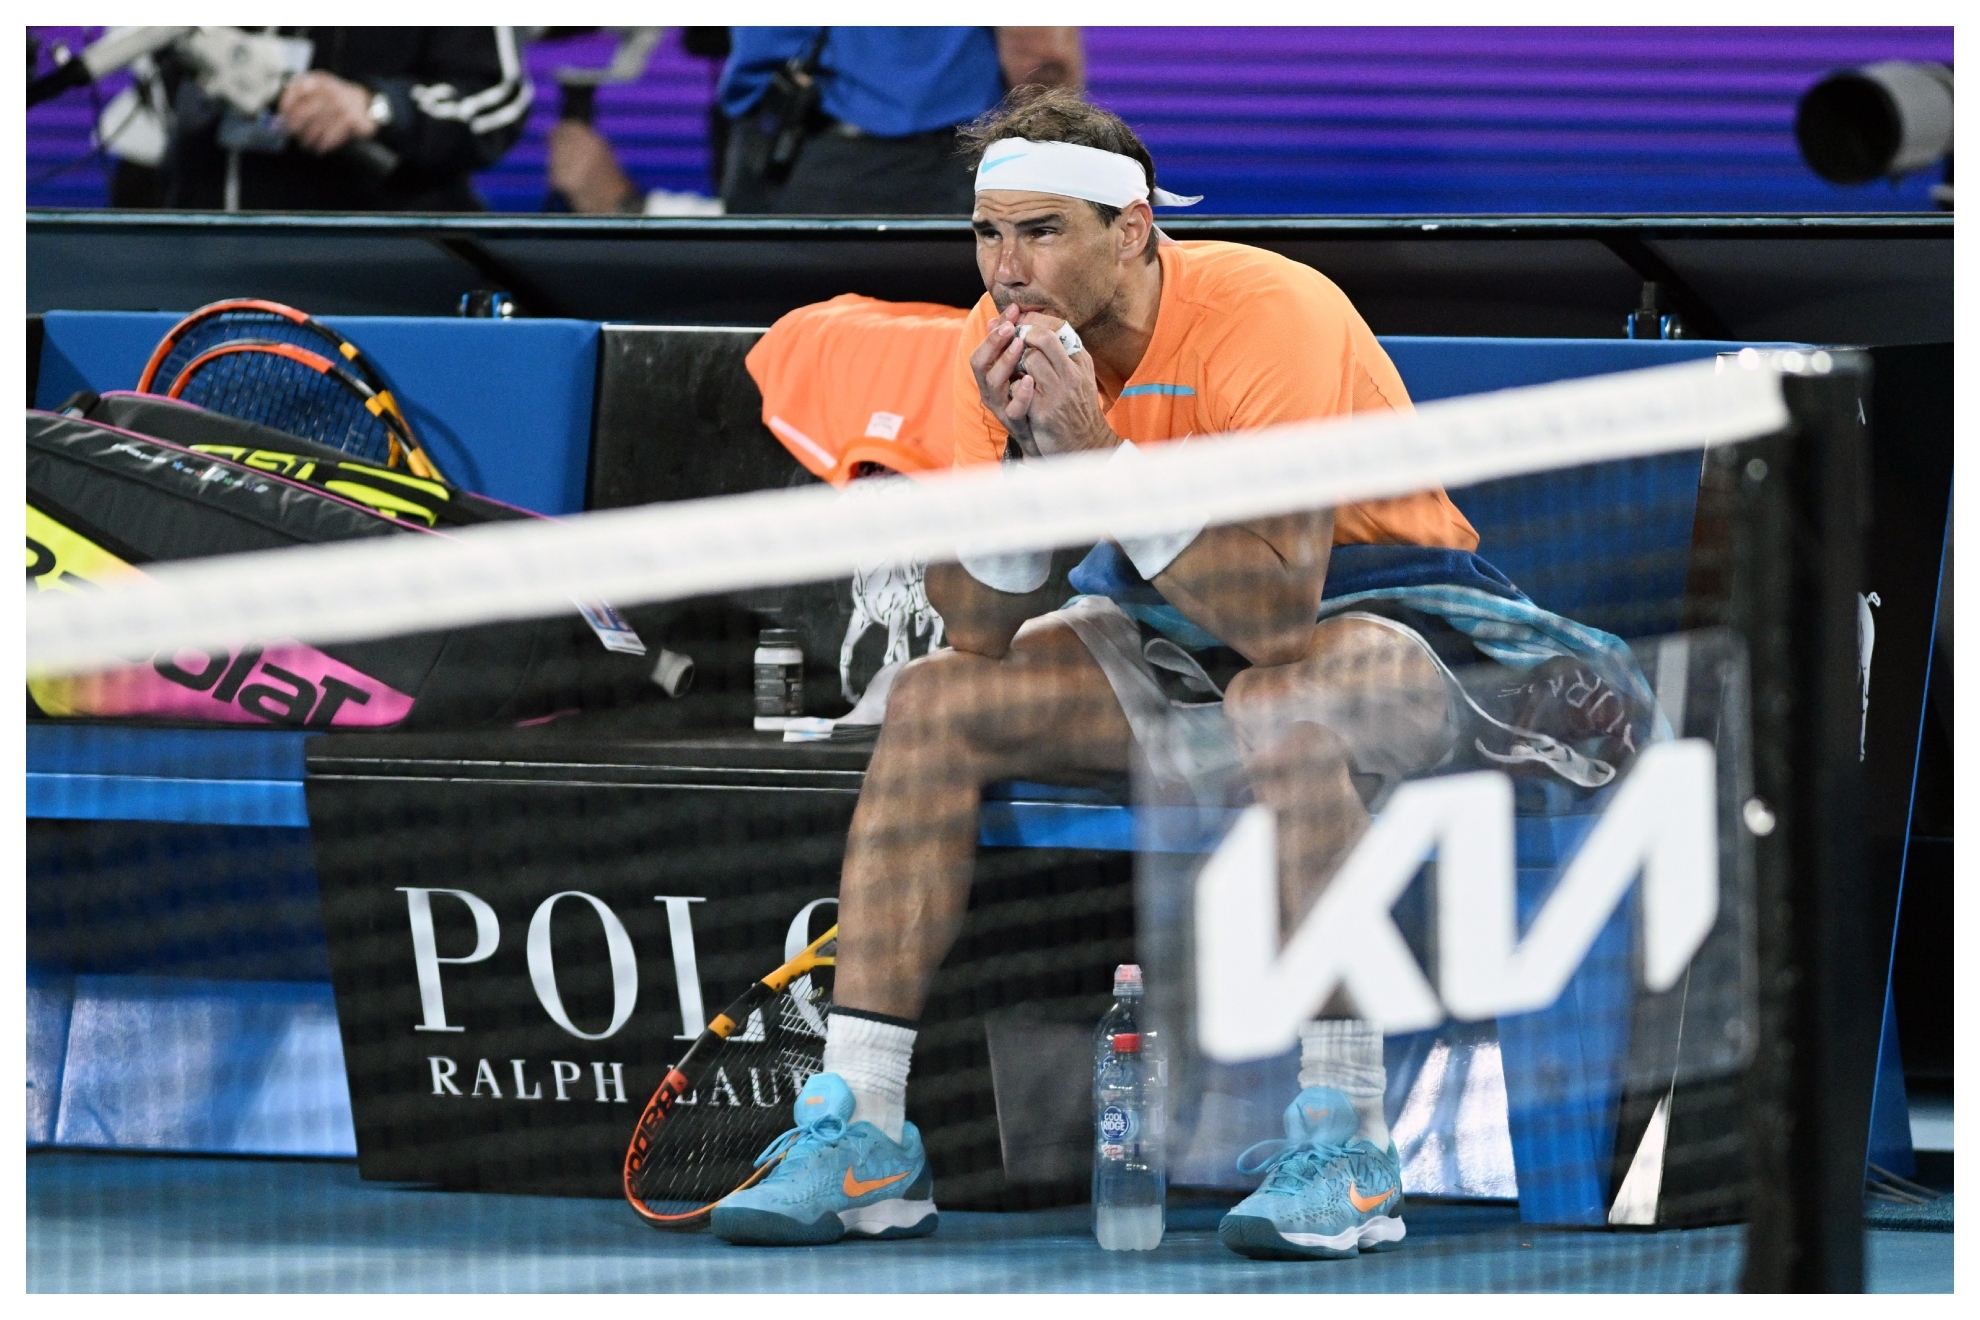 El tenista balear mostr signos de preocupacin y dolor por su lesin y derrota en la segunda ronda del Open de Australia.